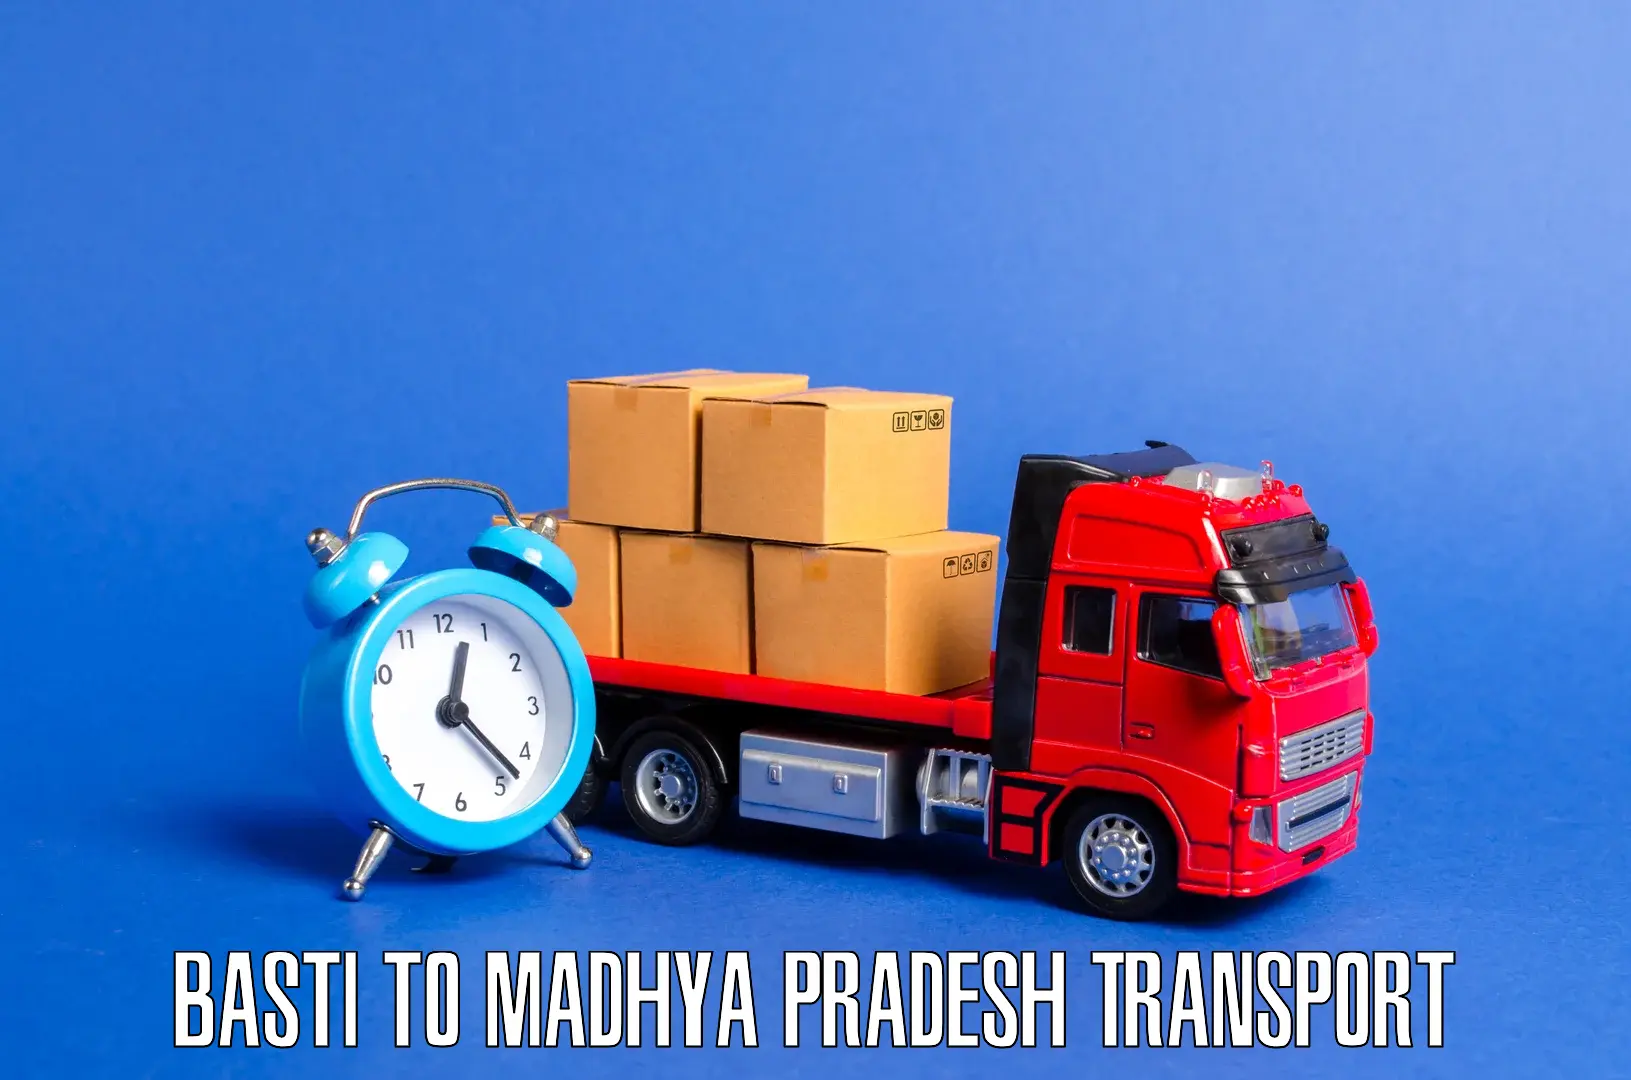 Daily parcel service transport Basti to Madhya Pradesh